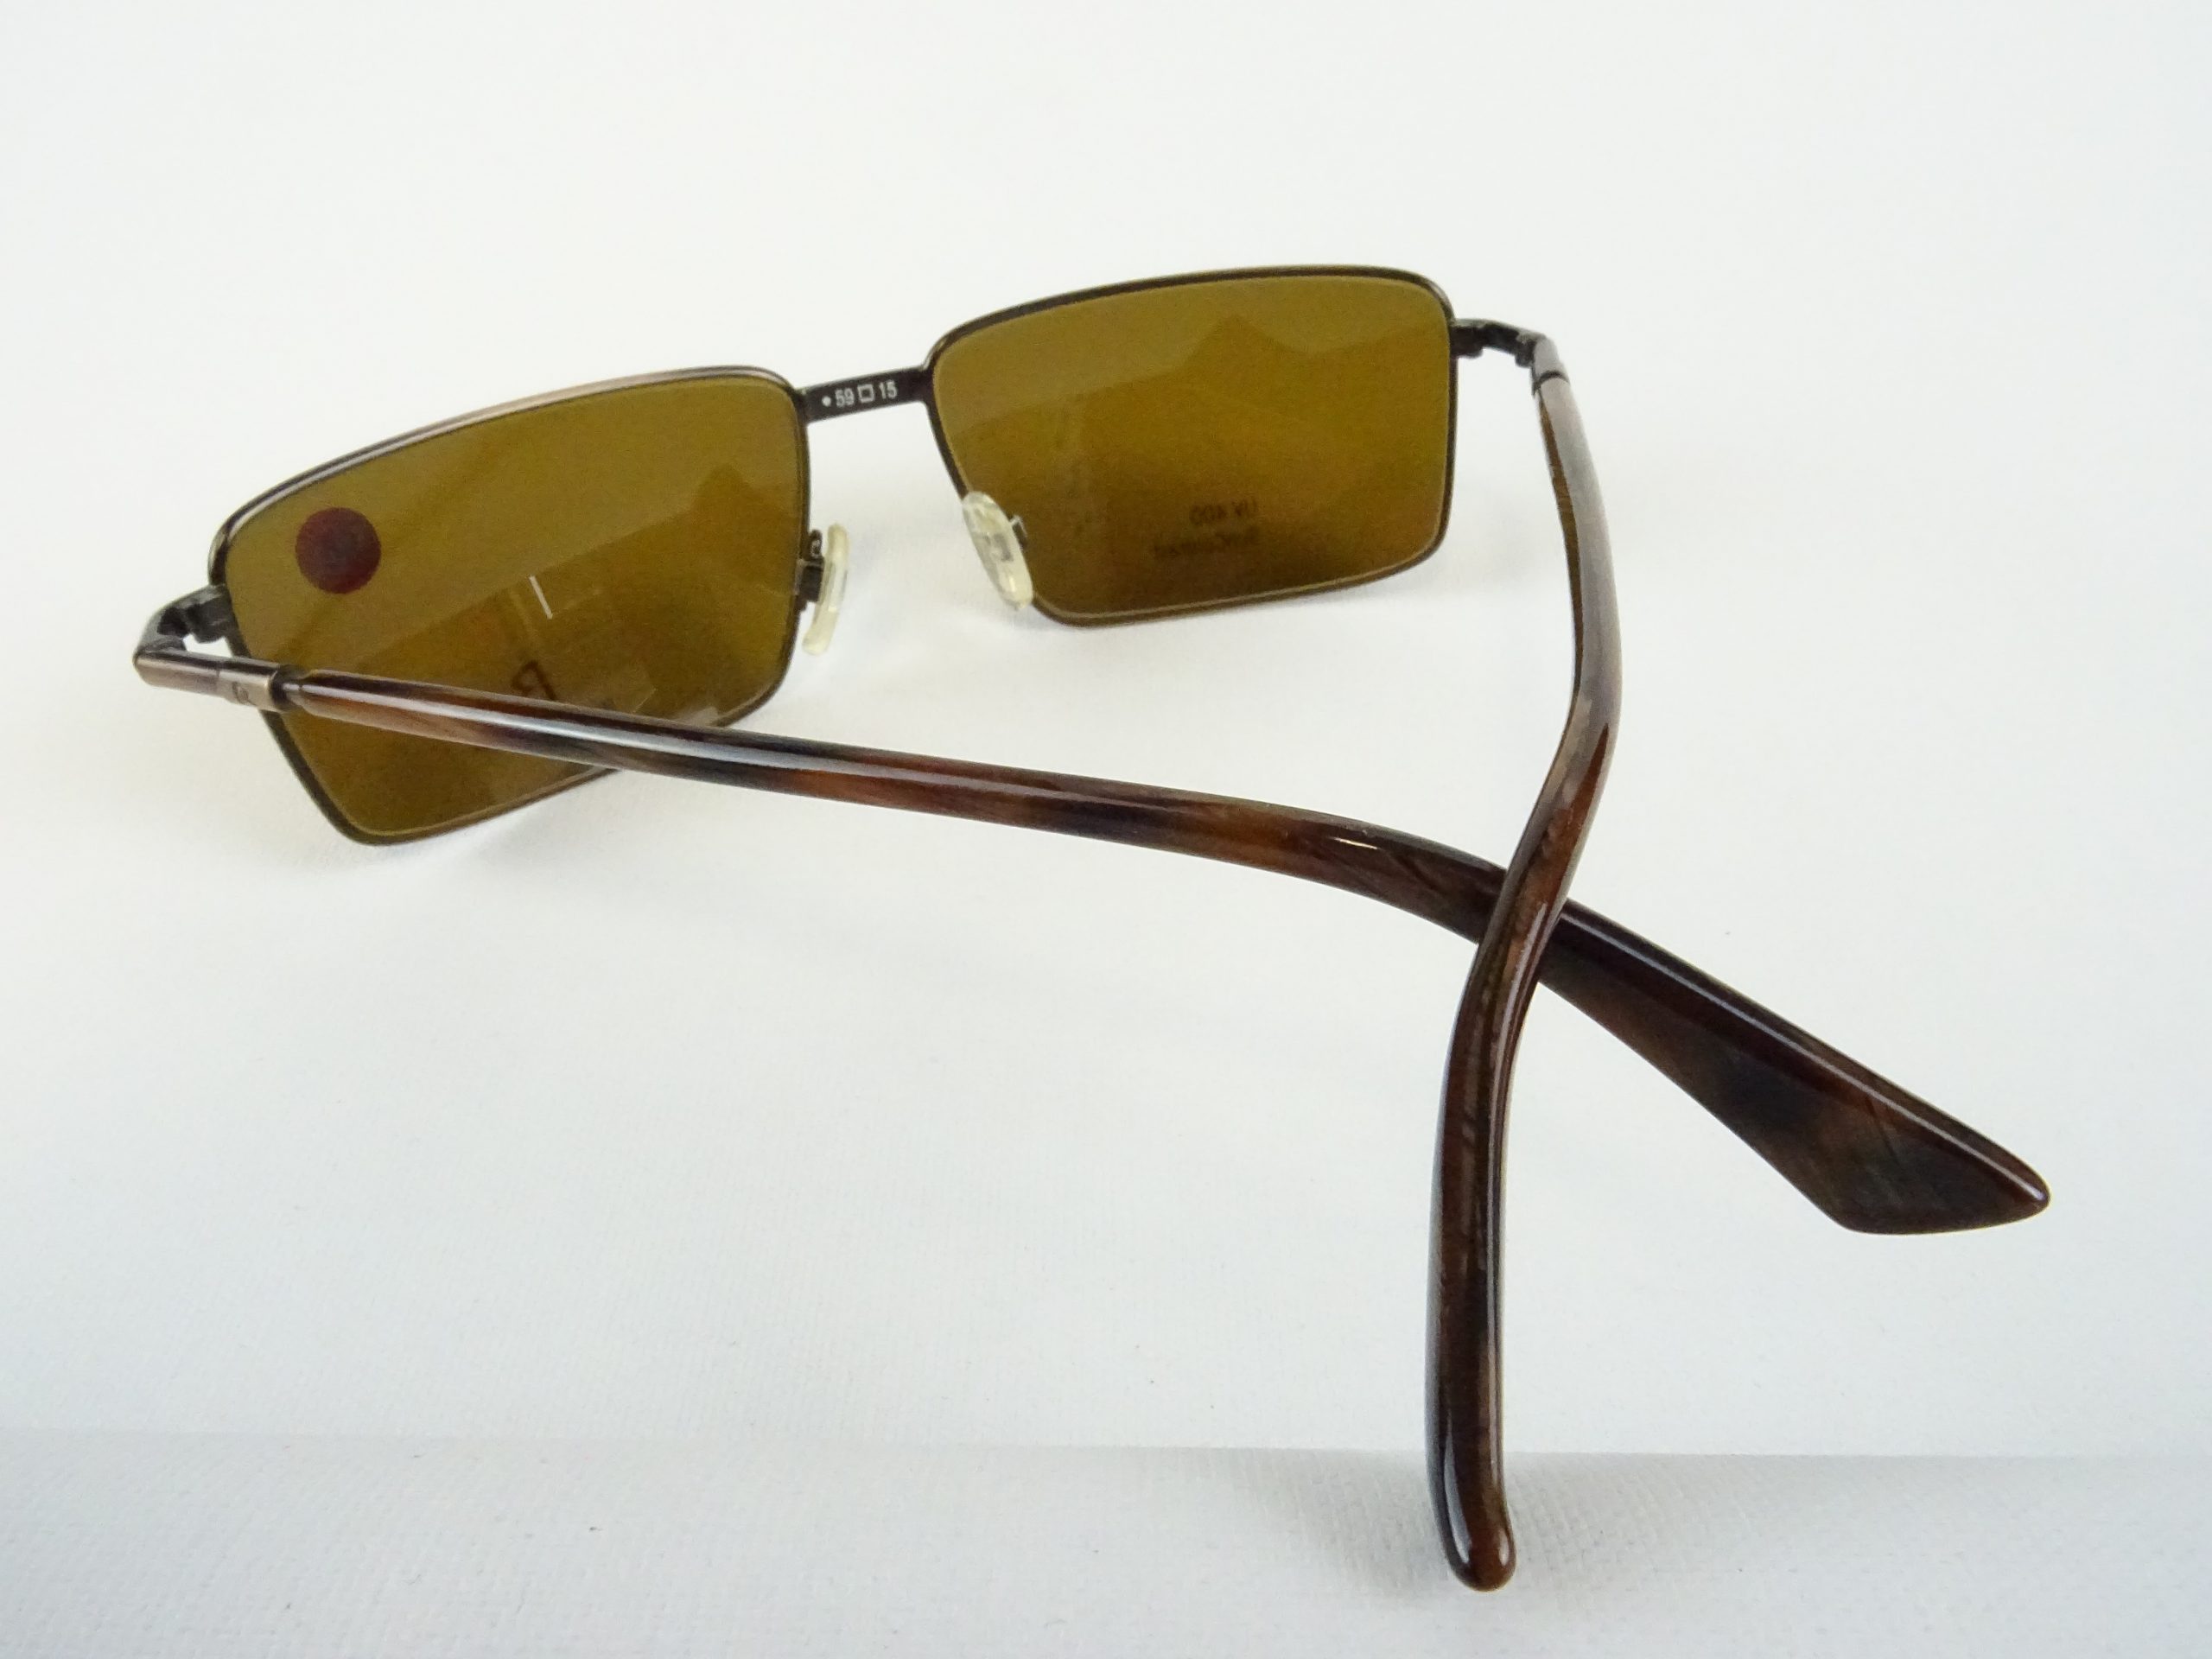 RODENSTOCK SUN – Gläser UV Metallfassung Form M Sonnenbrille Contrast 400 Vintage braun sportlich Welt eckige curved Gr. Brillen Herren